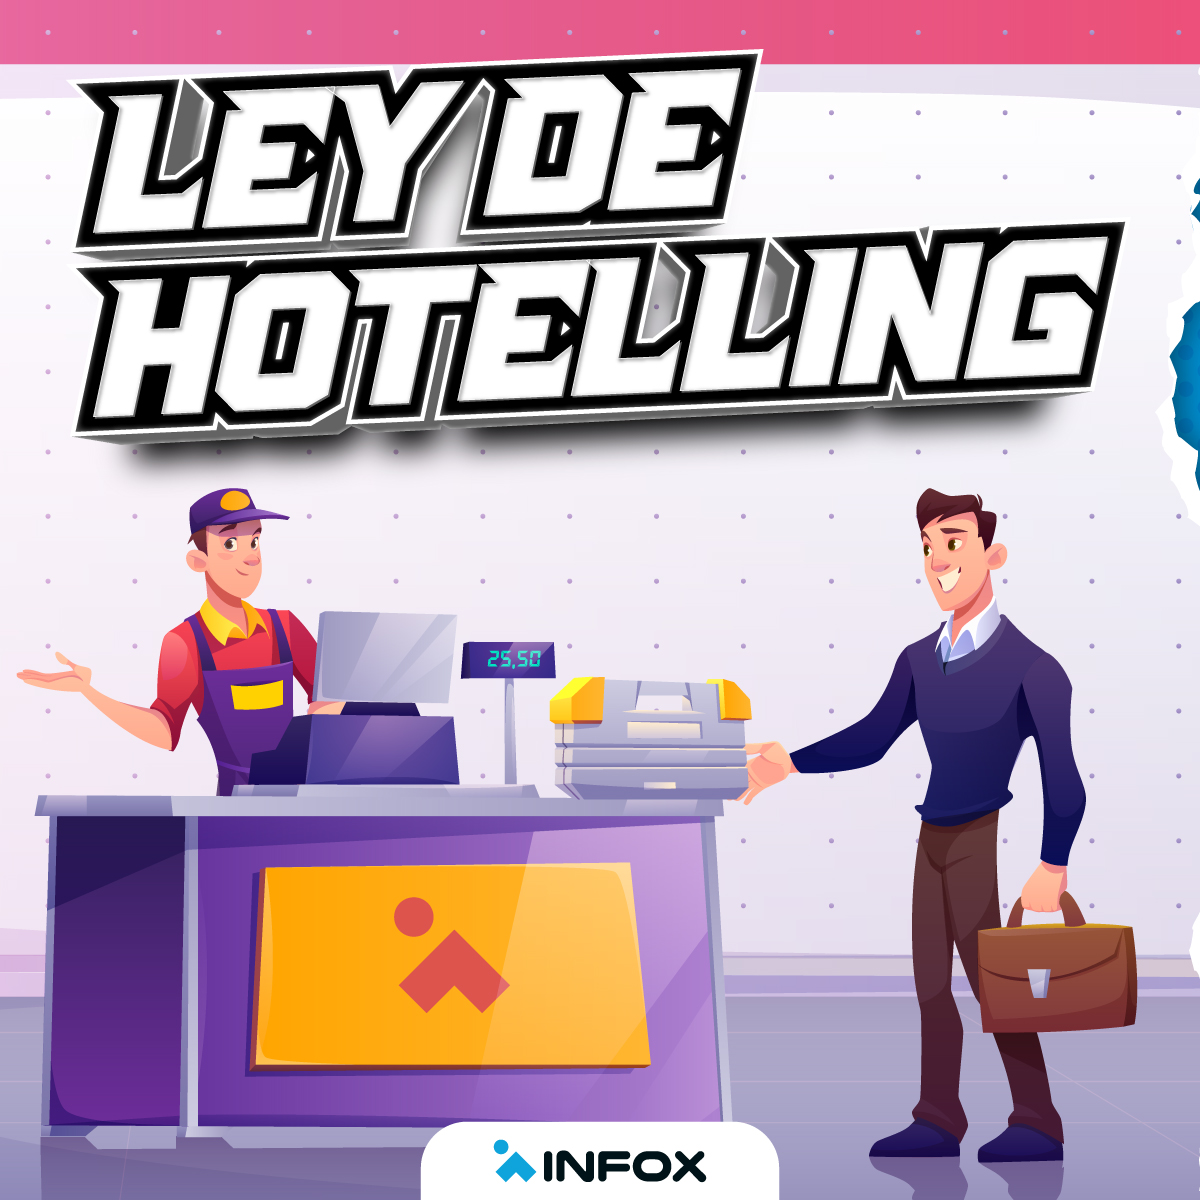 Ley de Hotelling - Infox